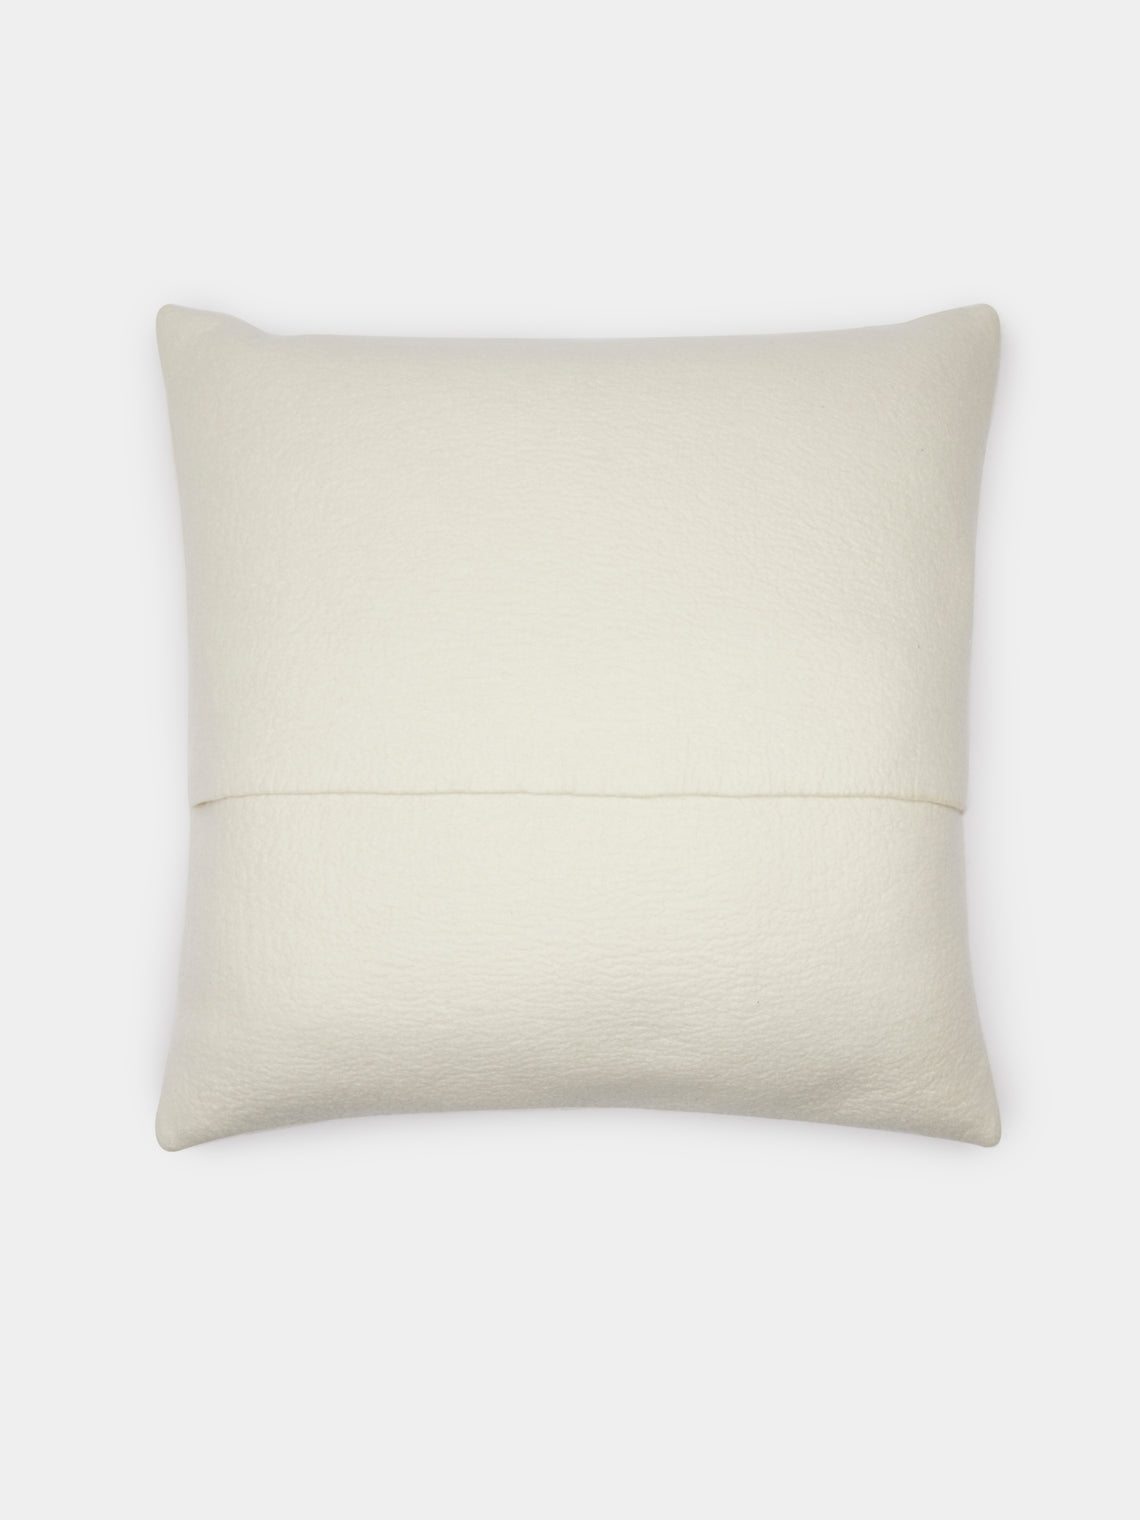 Rose Uniacke - Hand-Dyed Felted Cashmere Large Cushion - Cream - ABASK